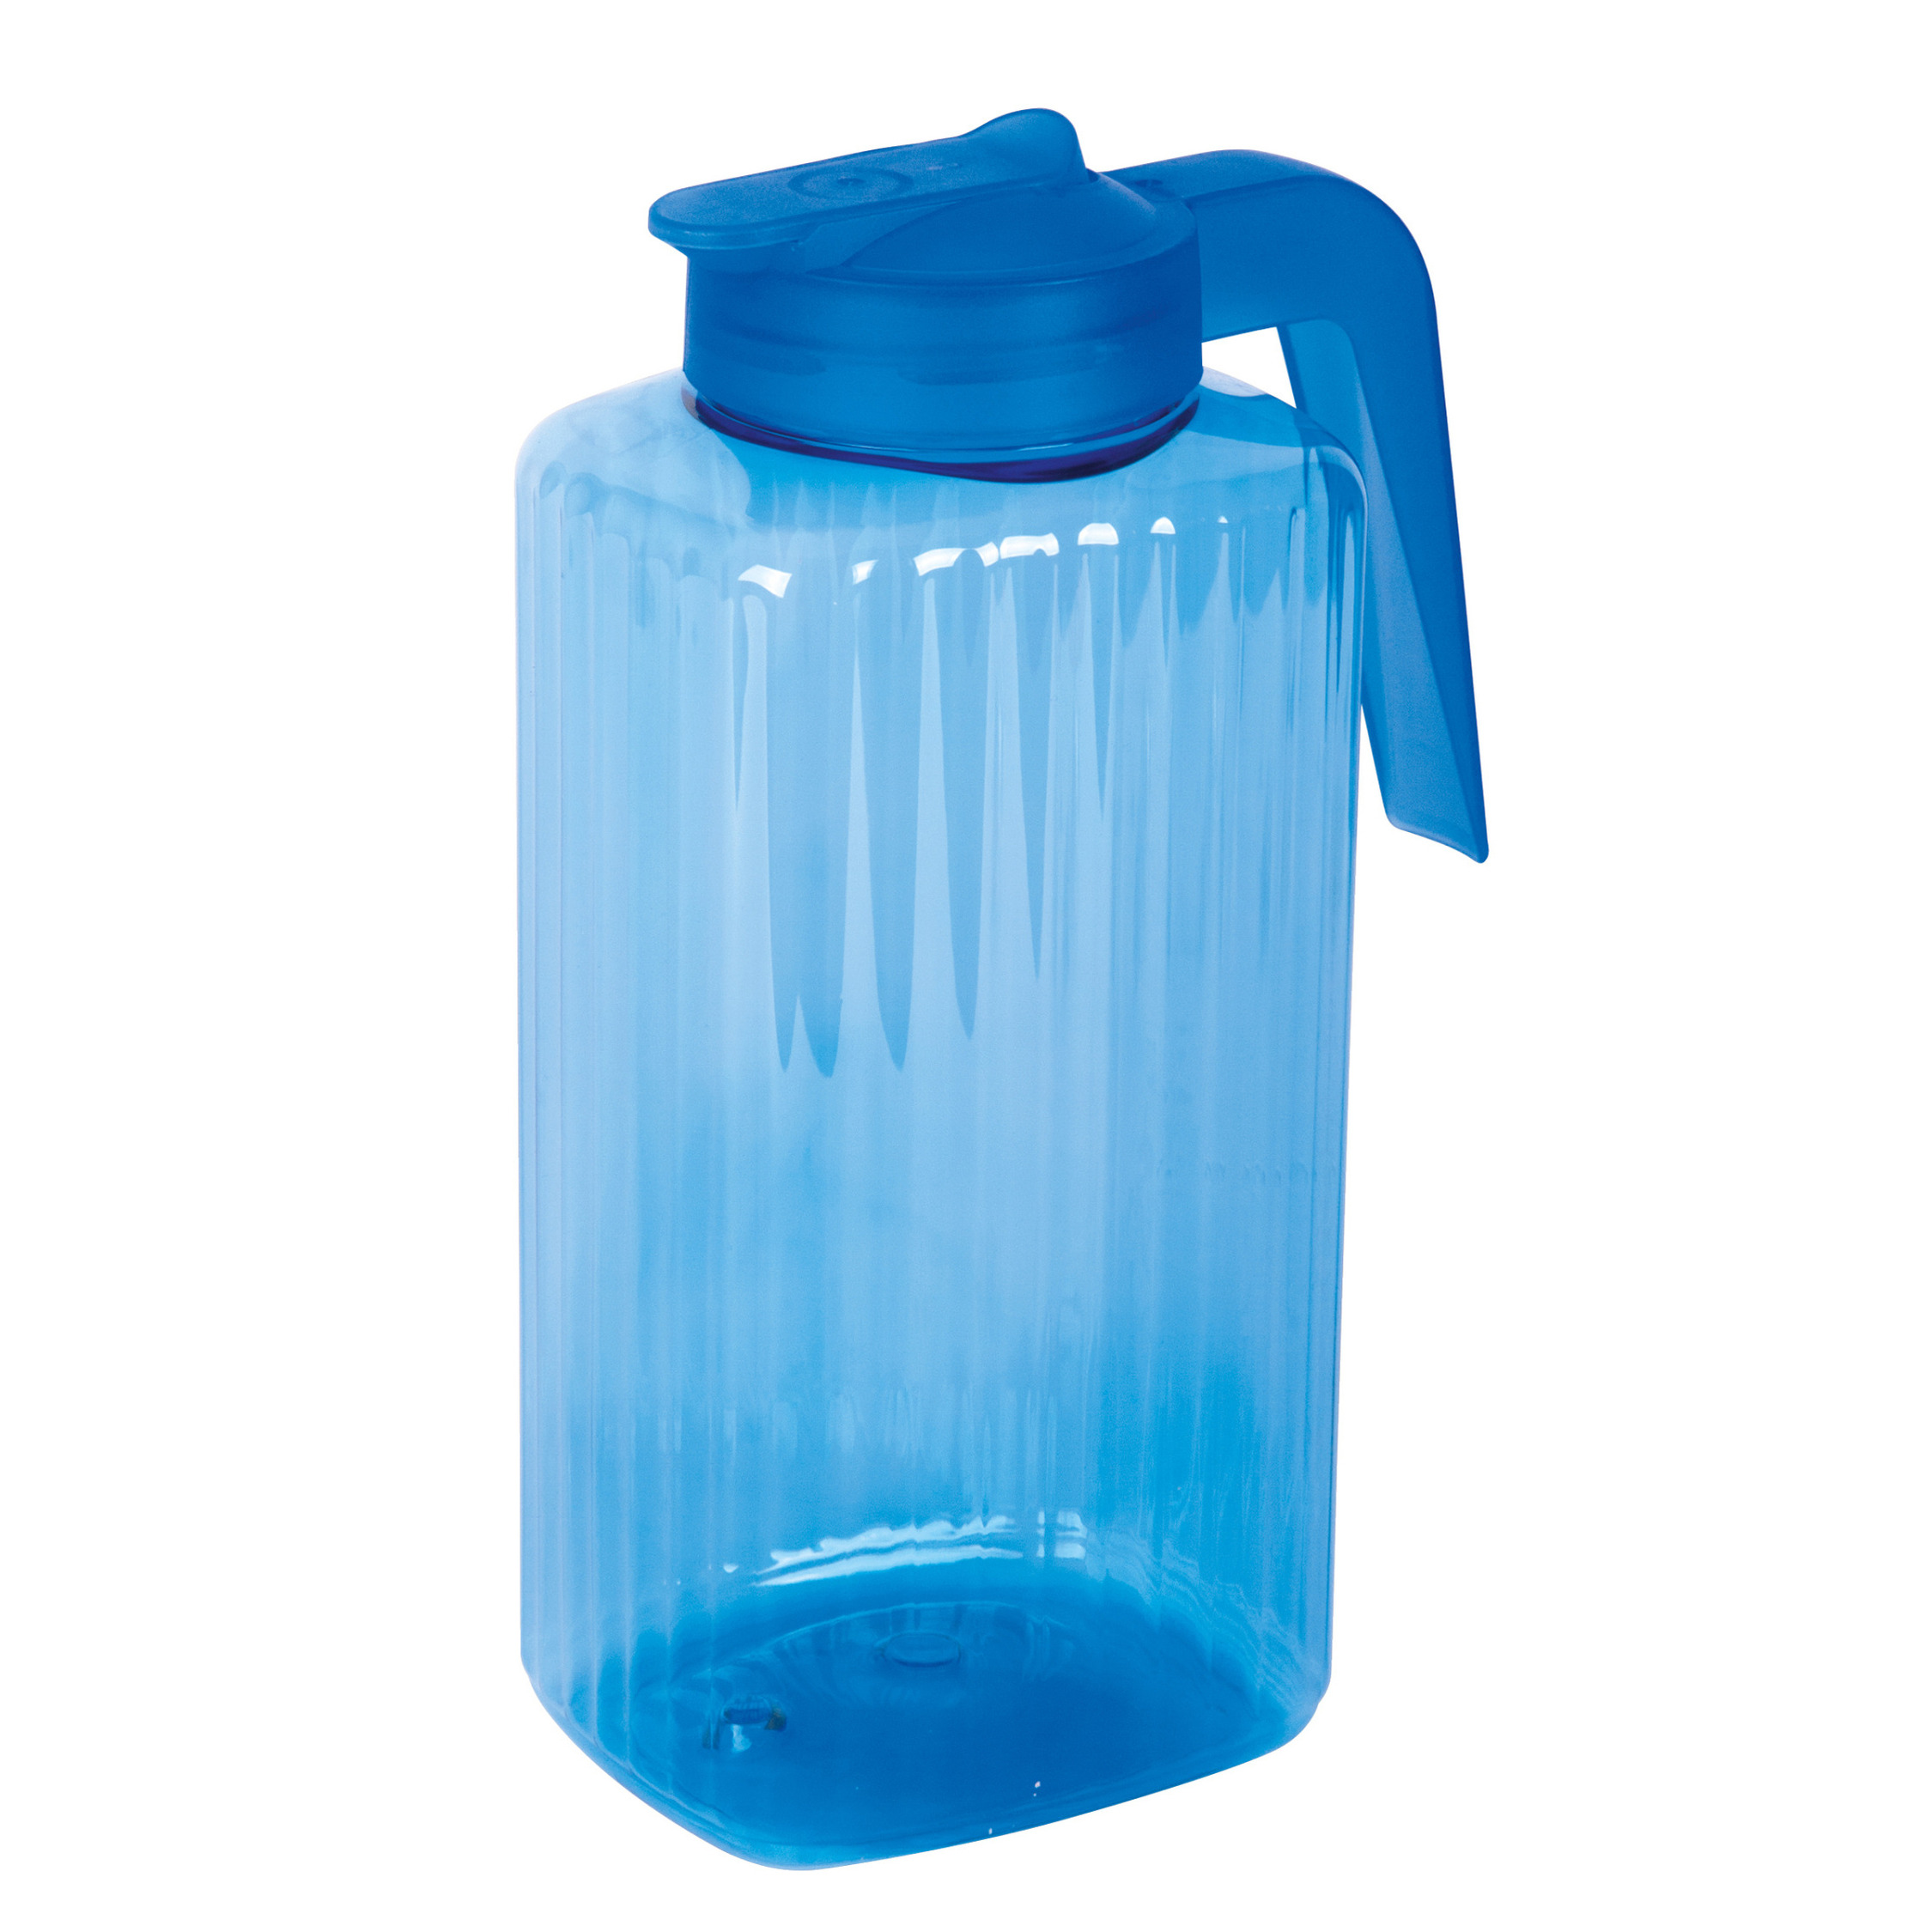 Juypal Hogar Schenkkan/waterkan met deksel - blauw - 2,2 liter - kunststof - L15 x H24 cm -